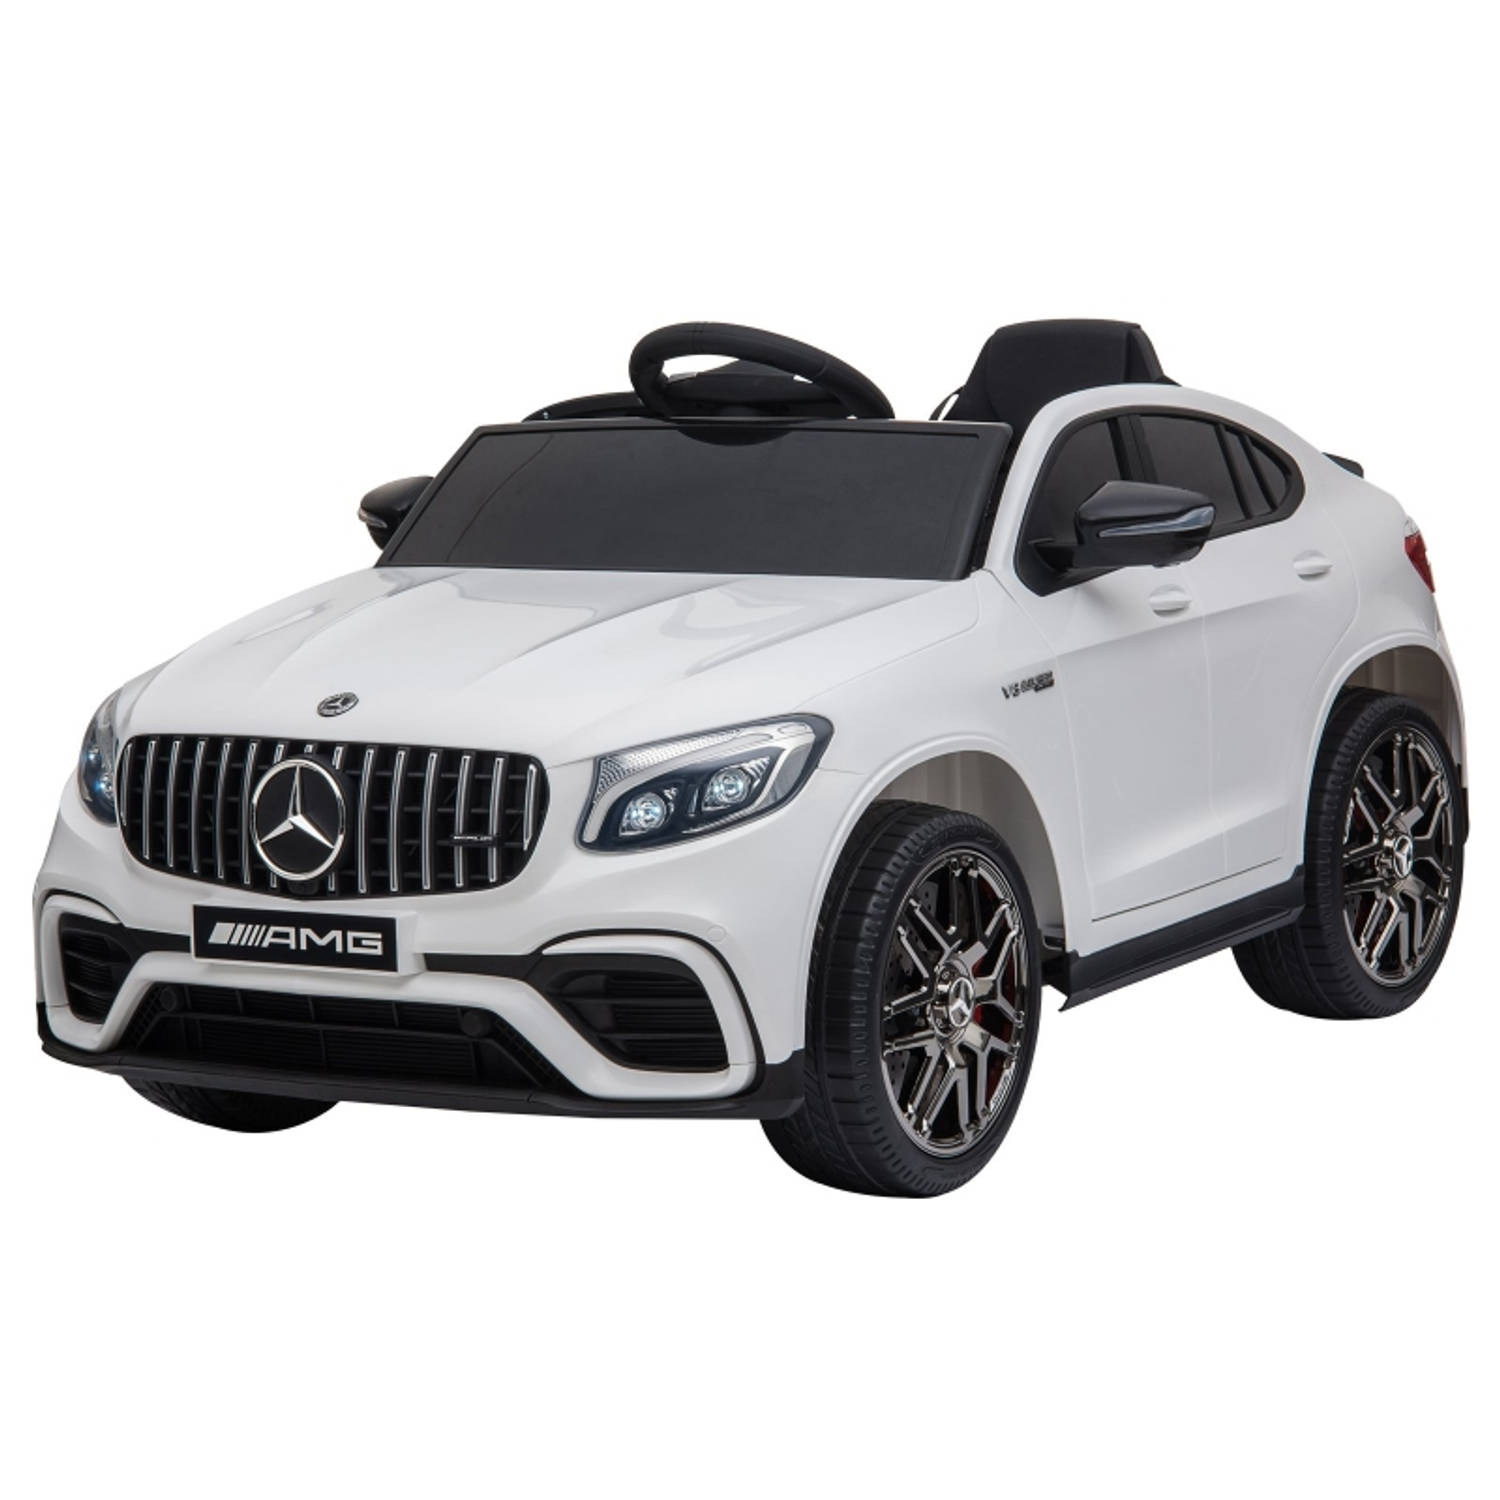 Elektrische kinderauto - Mercedes AMG - Afstandsbediening - Buitenspeelgoed - 2,5 tot 5 jaar - Wit - 115 x 70 x 55 cm